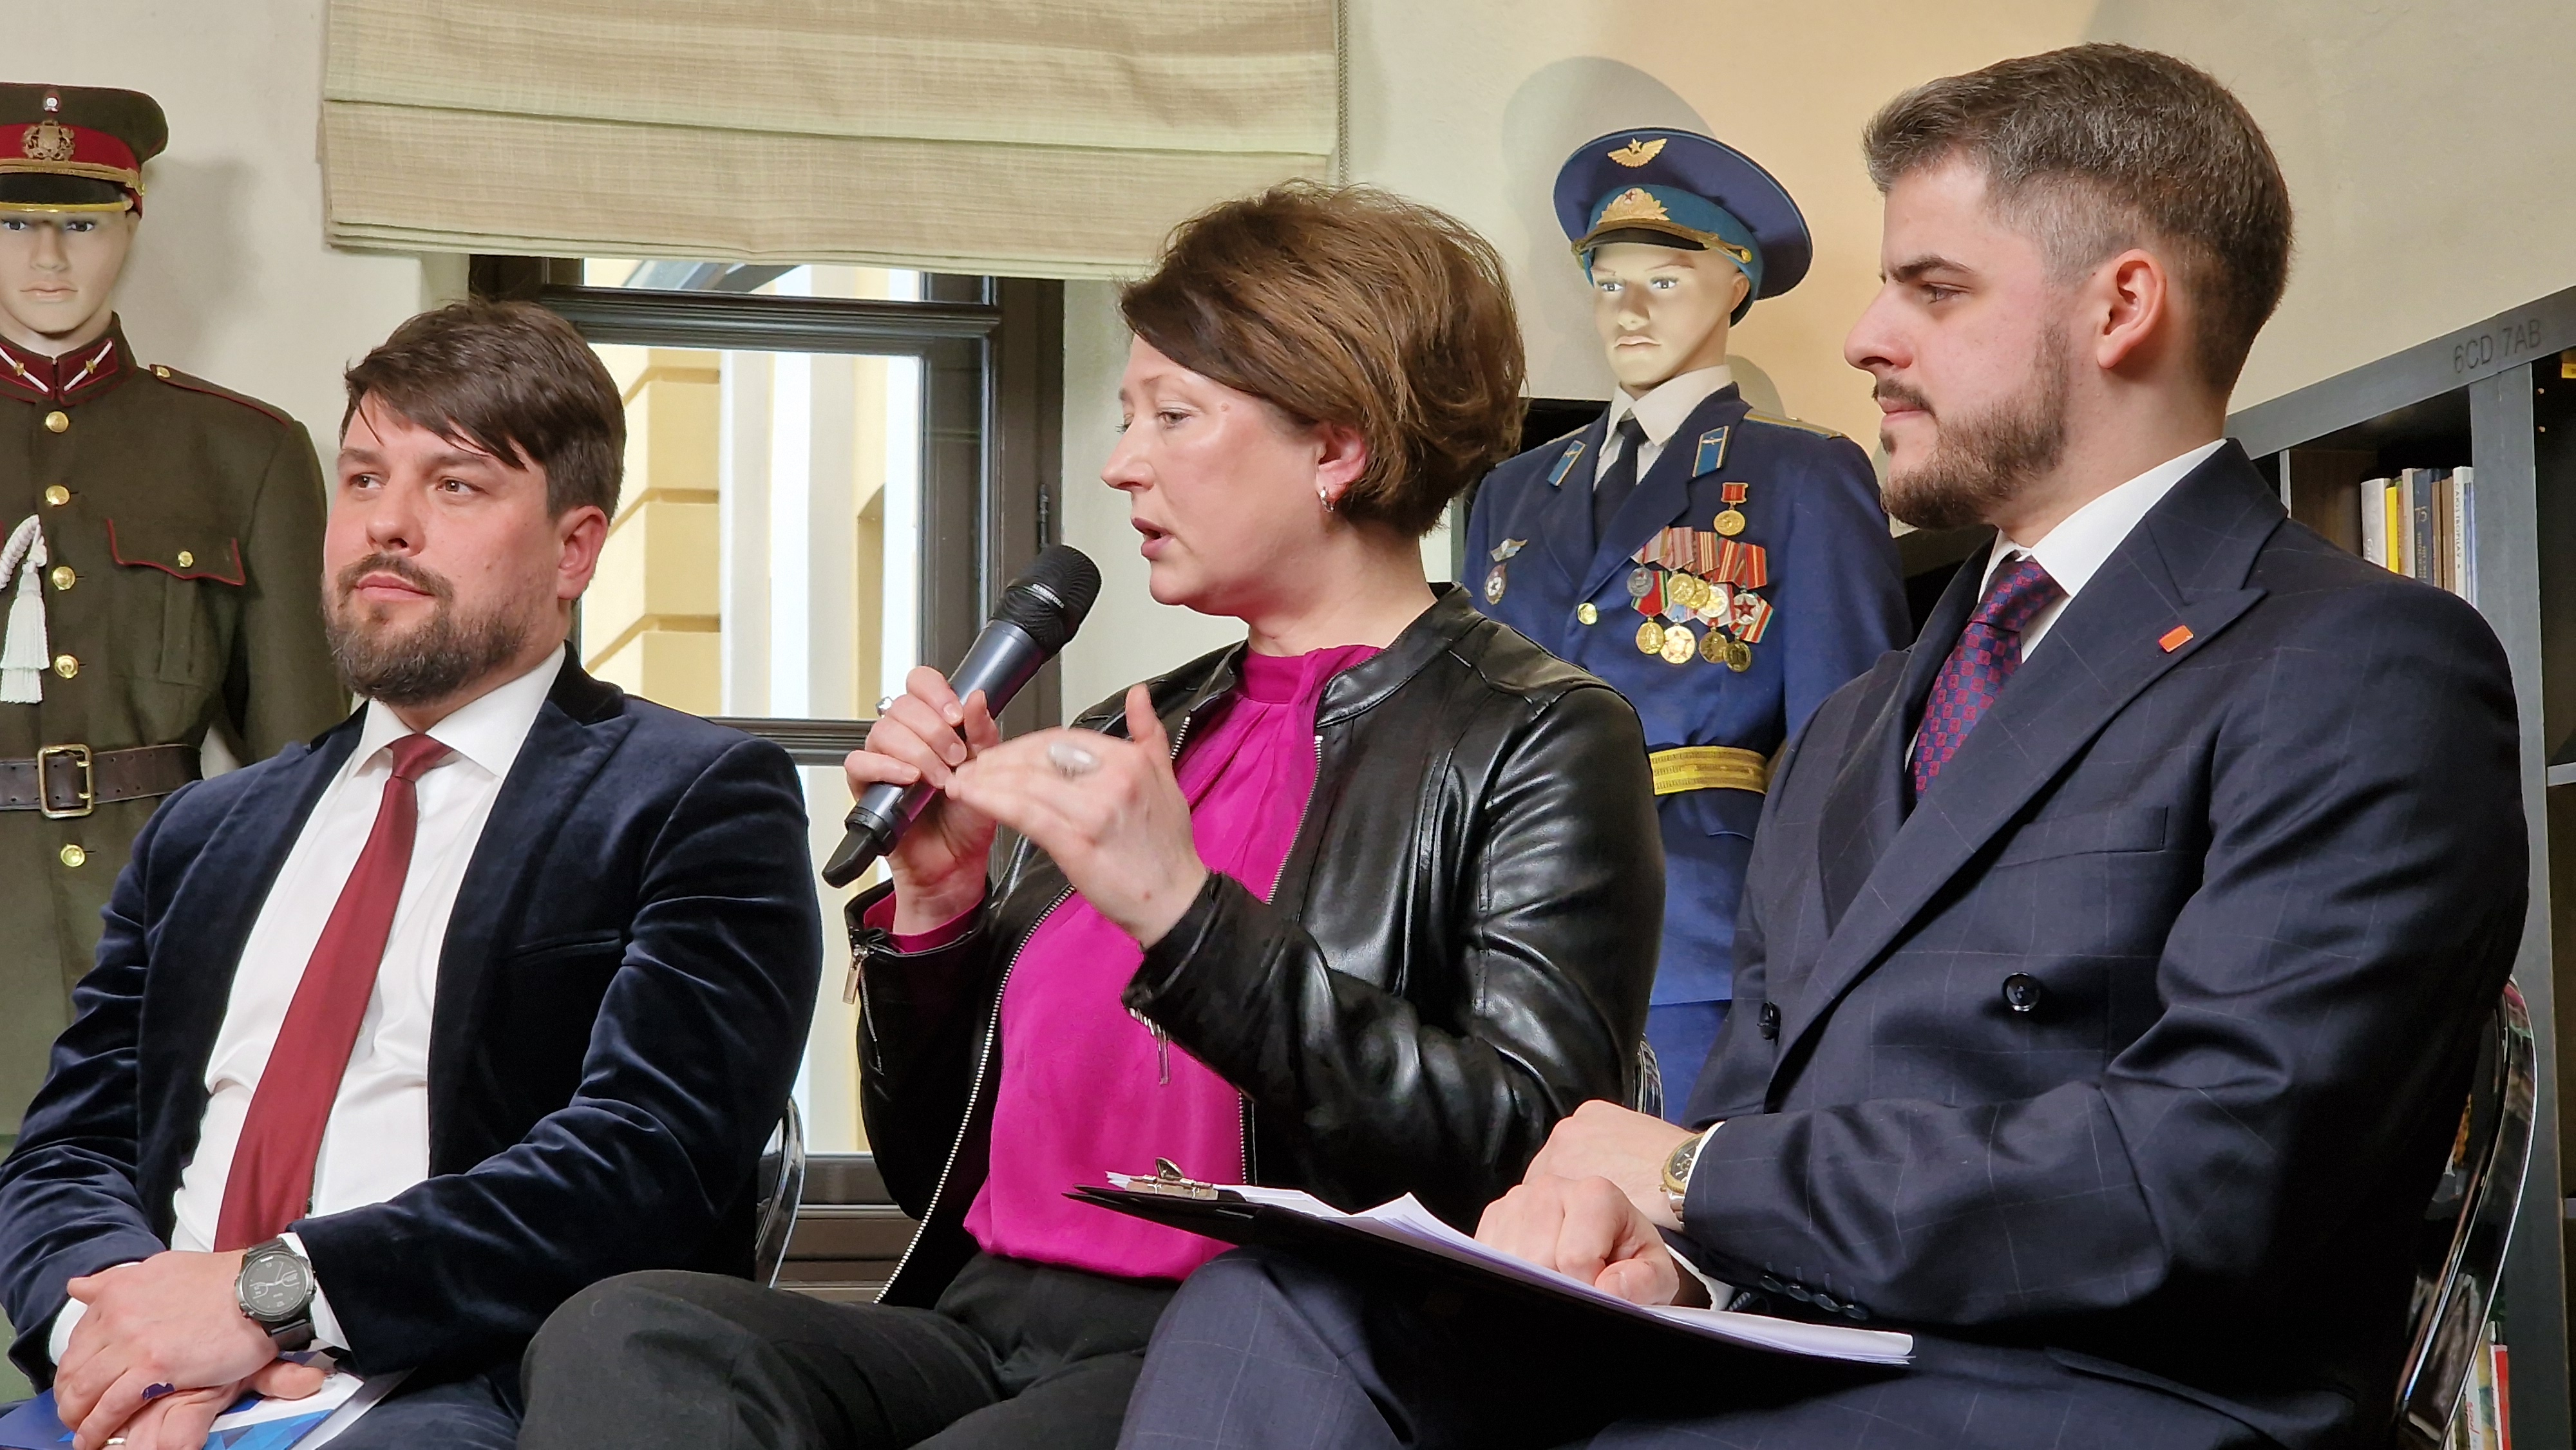  "Vērtējam darbus un solījumus" cikla diskusija “Kā nosargāt demokrātiskās vērtības?” Daugavpilī. 